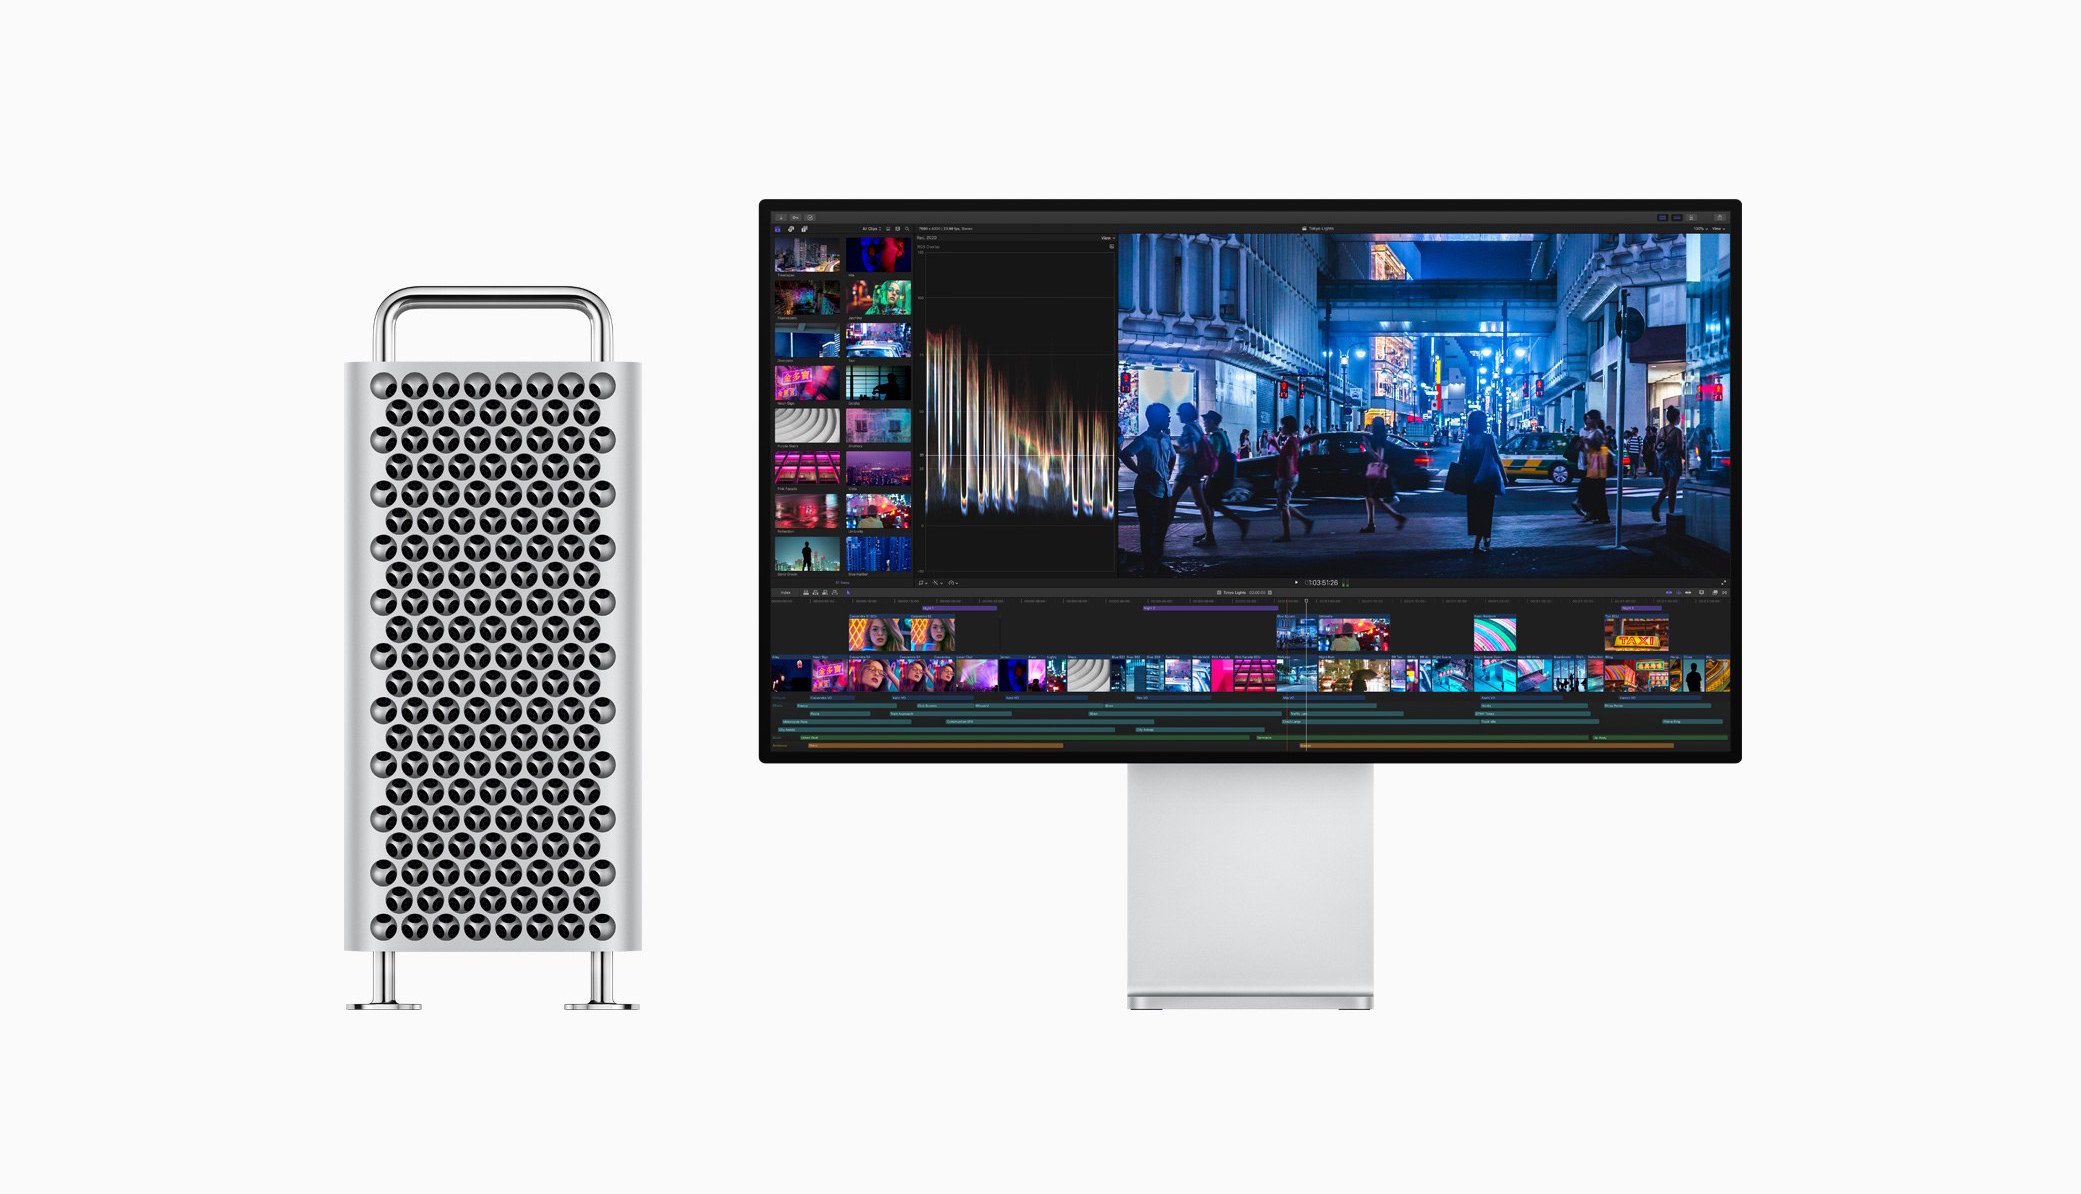 Apple vient de dévoiler son nouveau Mac Pro 2019 ultra puissant lors de sa keynote